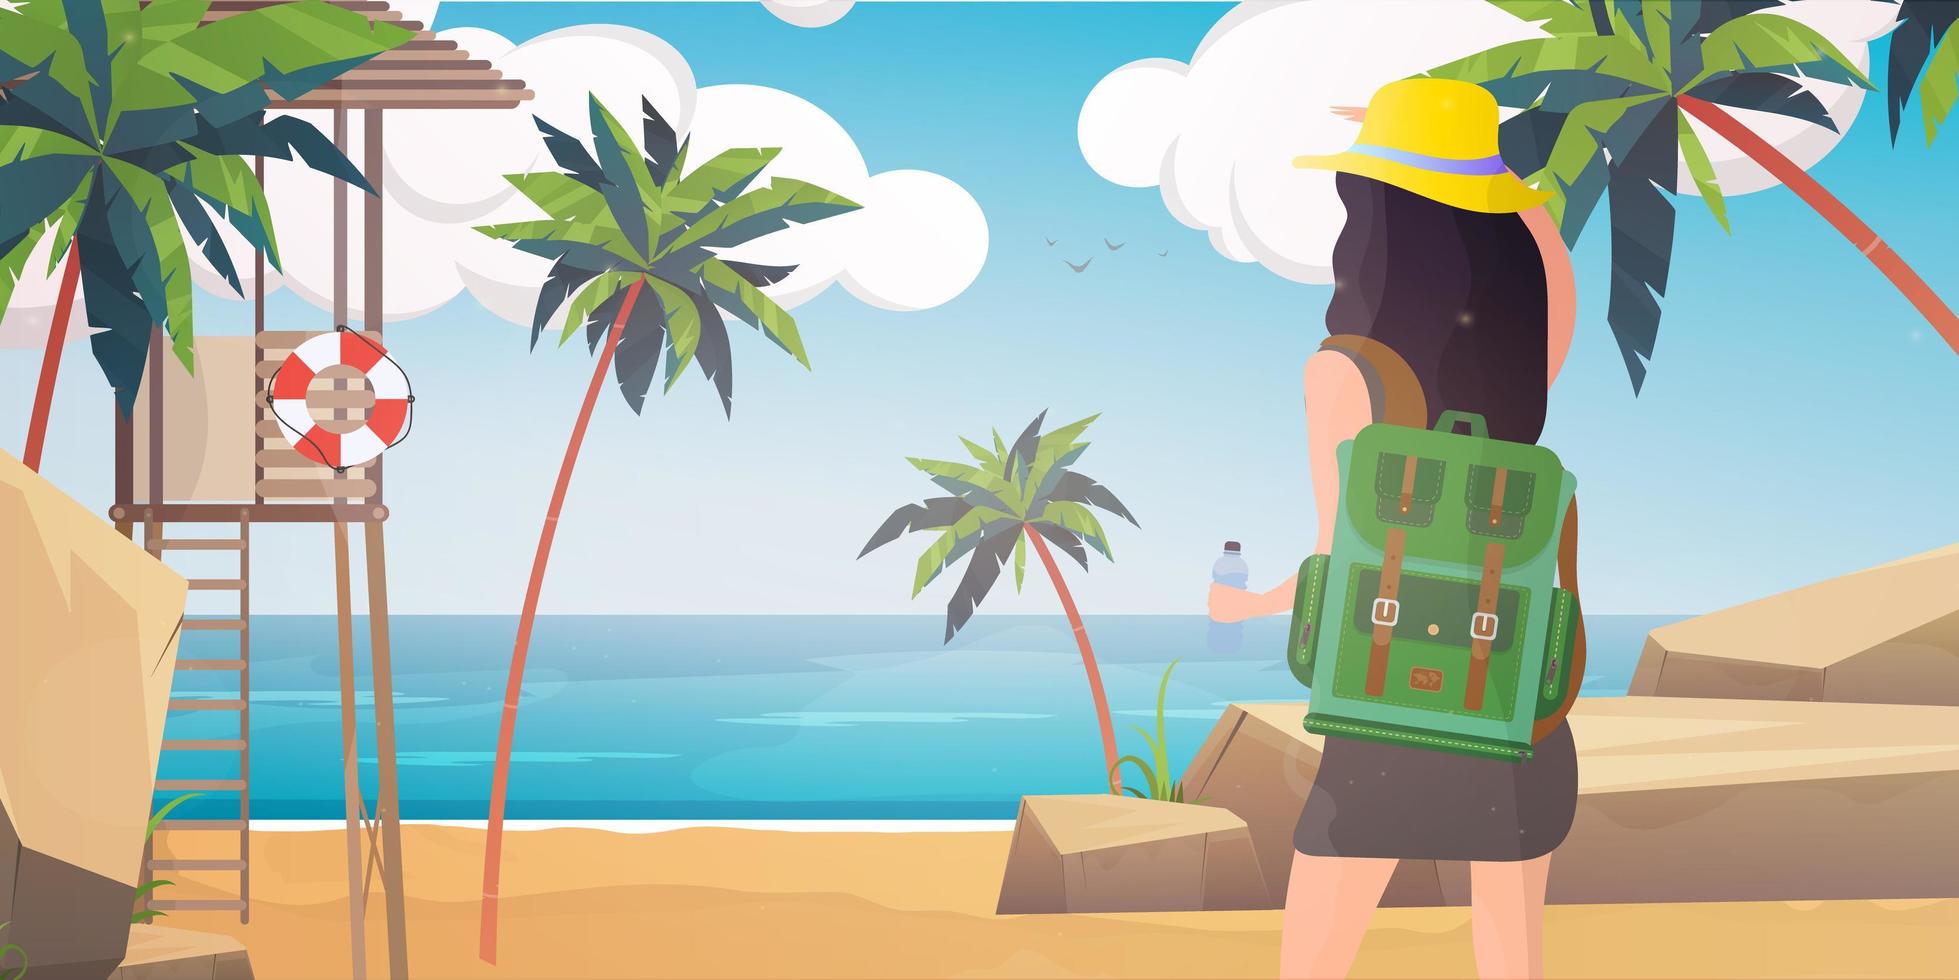 chica con mochila mira a la playa. una mujer camina por la playa con palmeras. estilo de dibujos animados. vector. vector